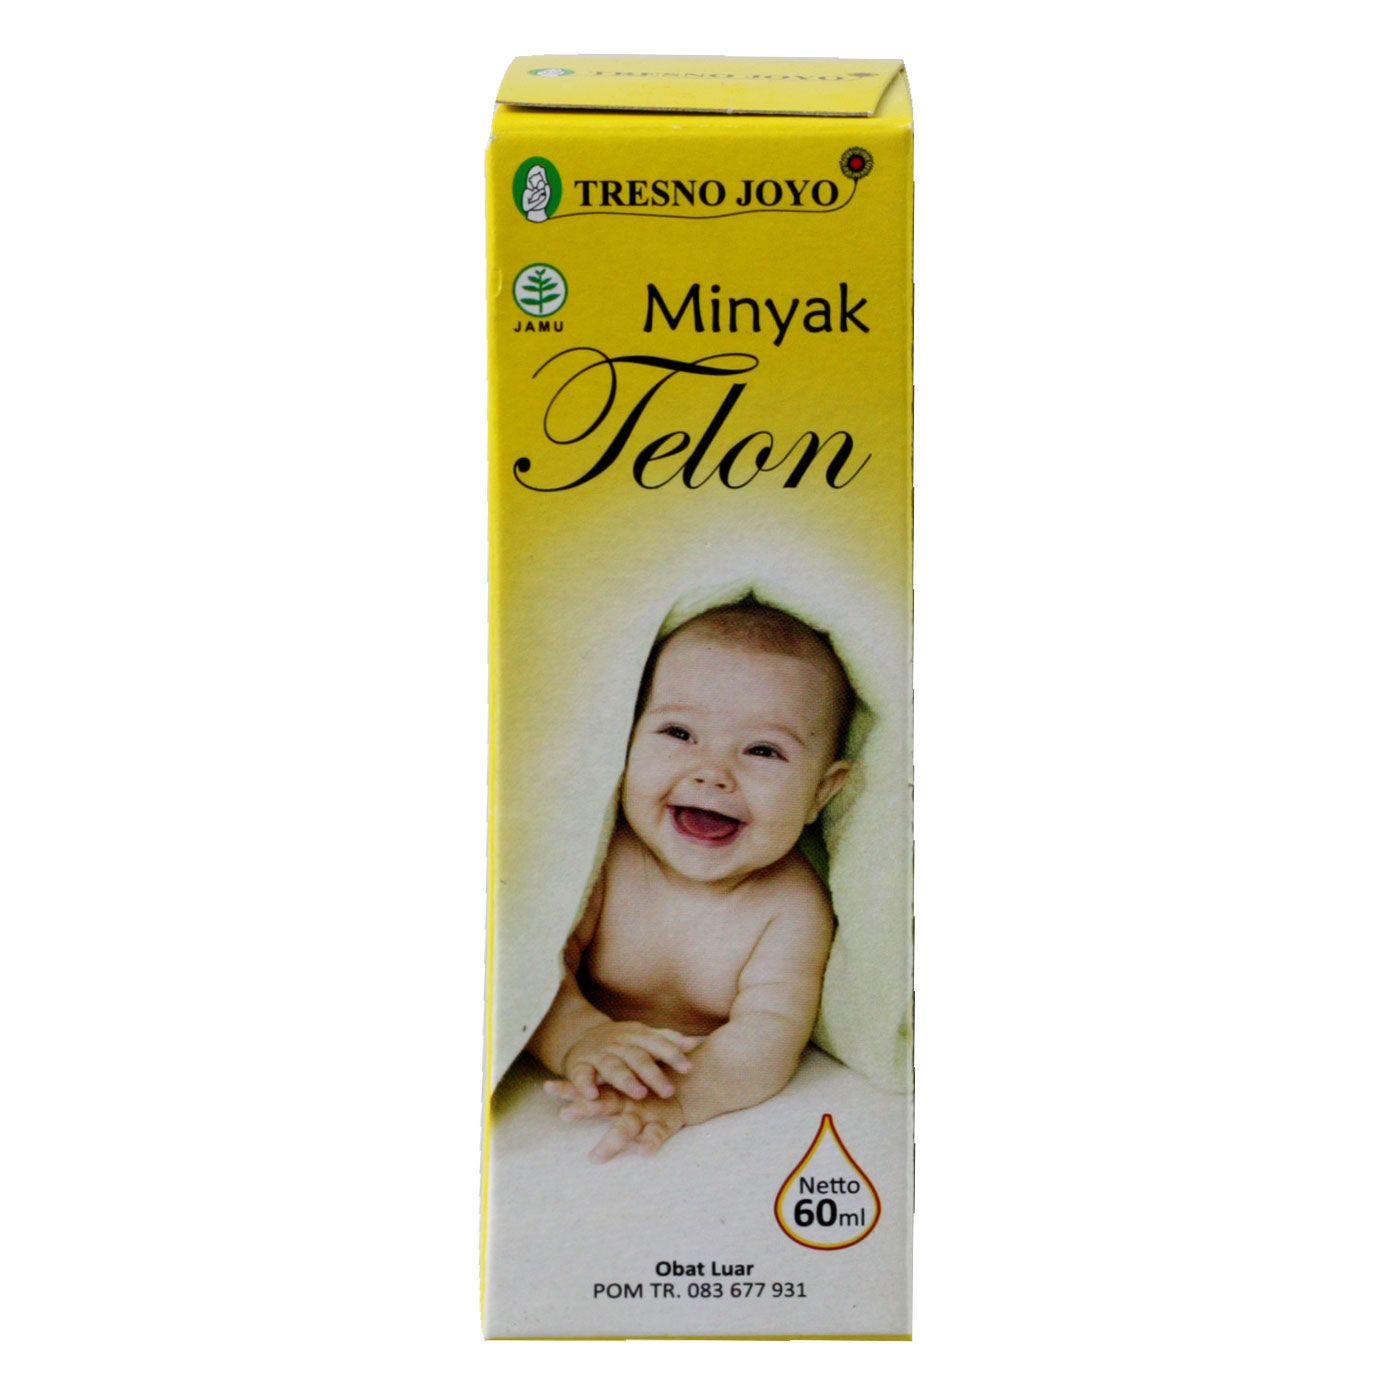 Tresno Joyo Minyak Telon 60ml - 2